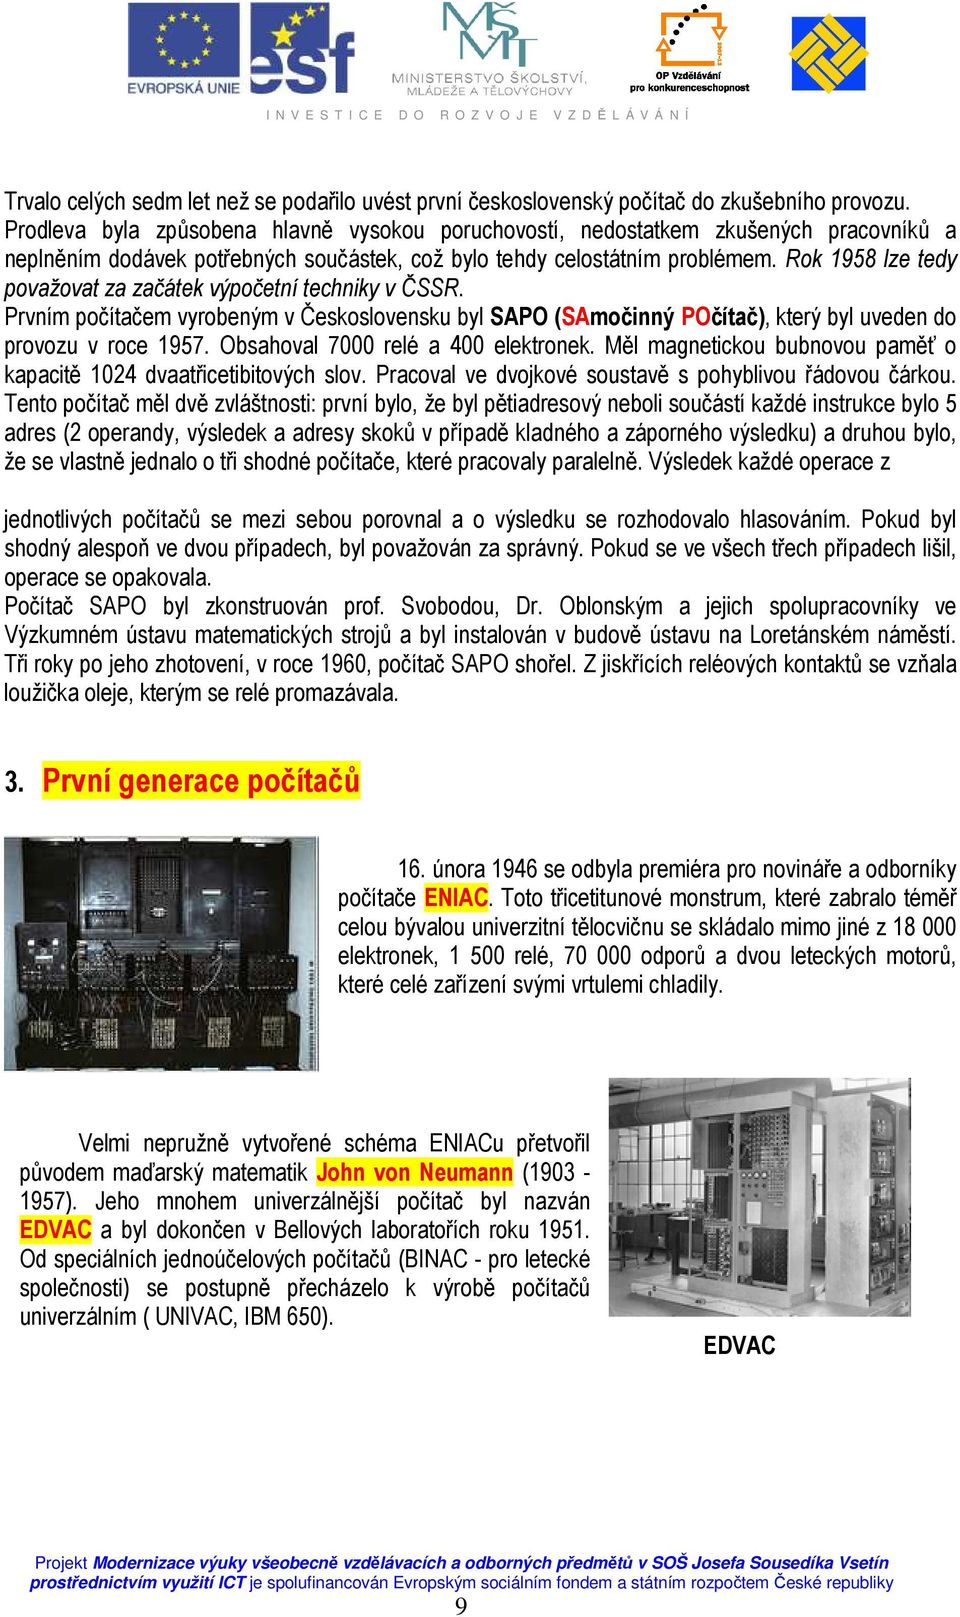 Rok 1958 lze tedy považovat za začátek výpočetní techniky v ČSSR. Prvním počítačem vyrobeným v Československu byl SAPO (SAmočinný POčítač), který byl uveden do provozu v roce 1957.